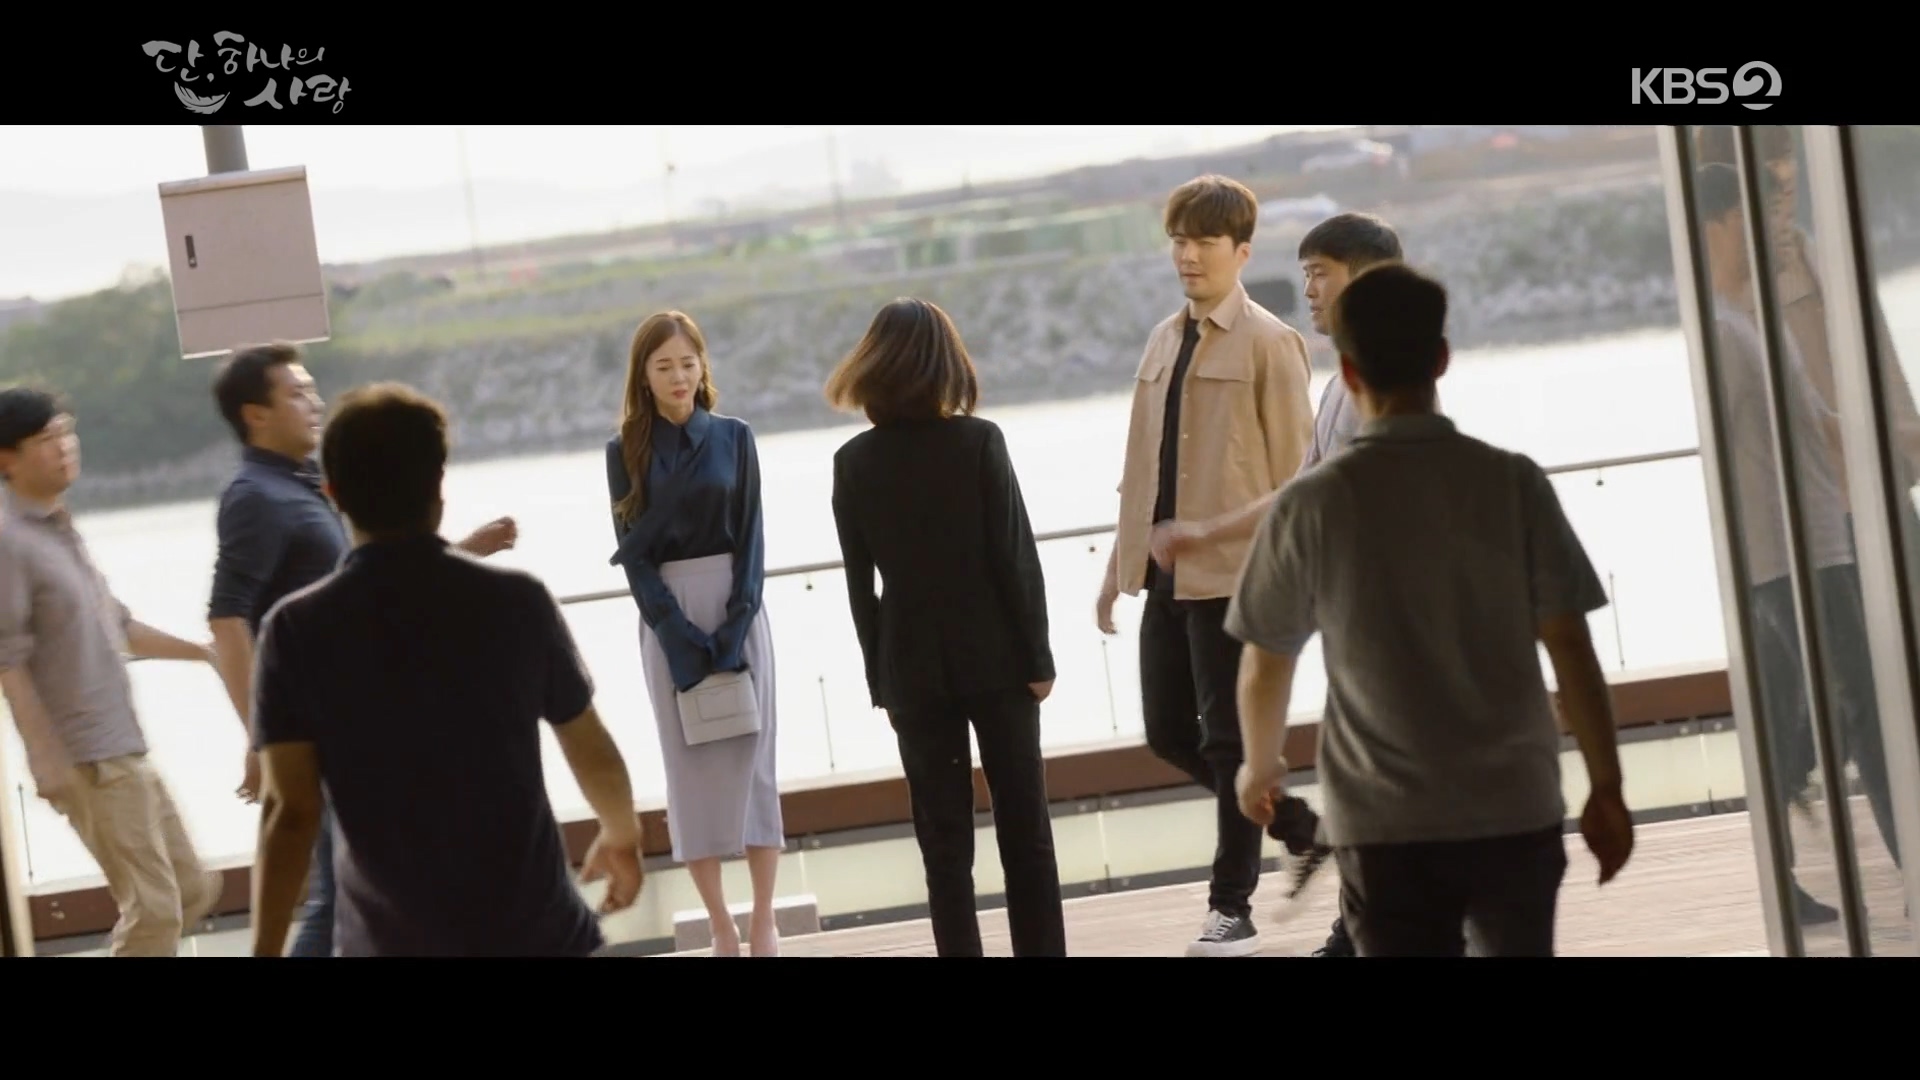 BBYB 김보미 KBS2 단 하나의 사랑 29회 착용 가방 (비비와이비 틴디백)